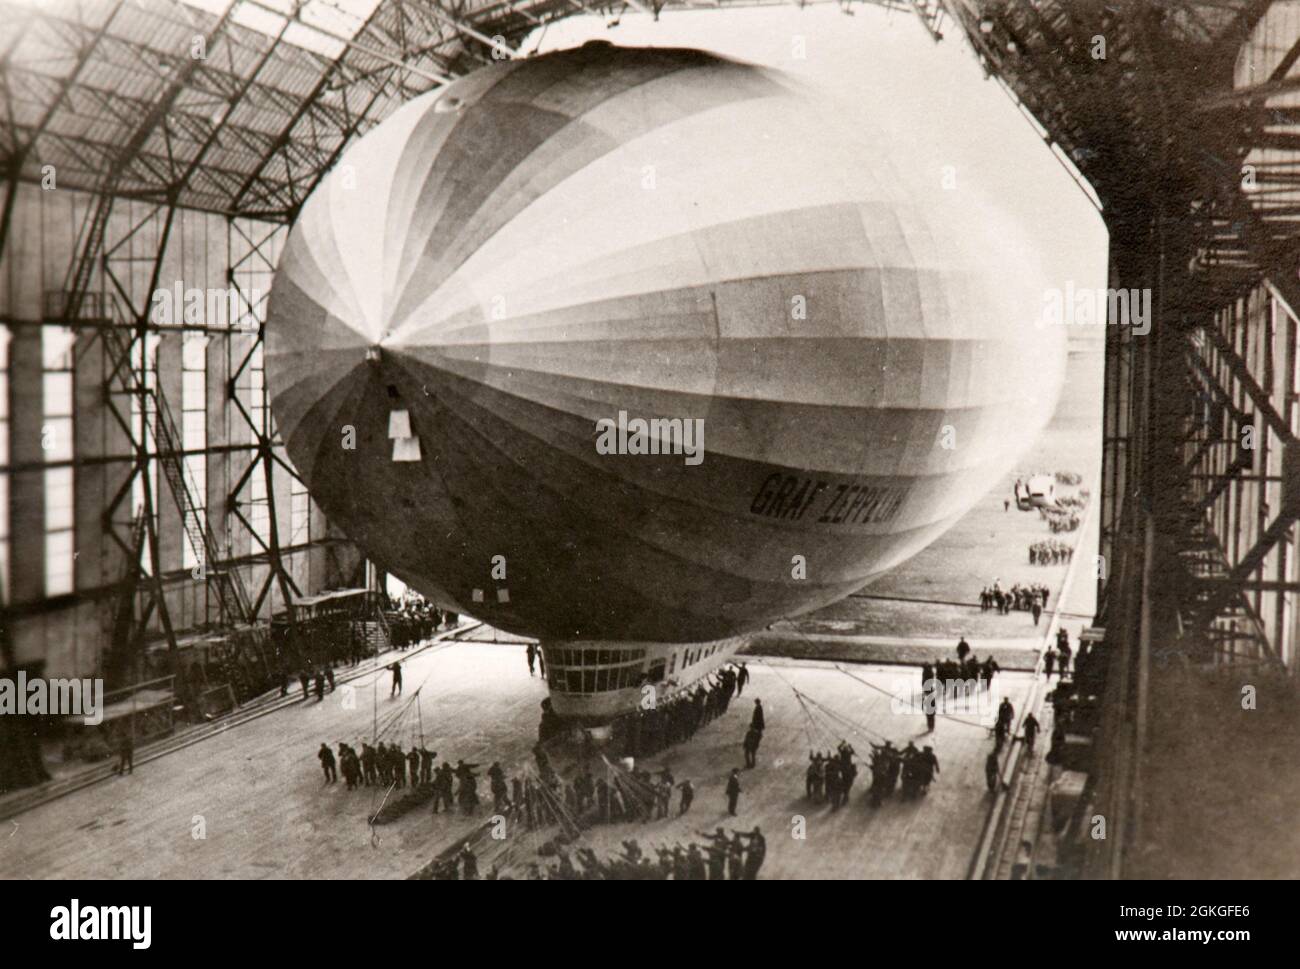 Un avion de Graf Zeppelin quitte le hangar Banque D'Images